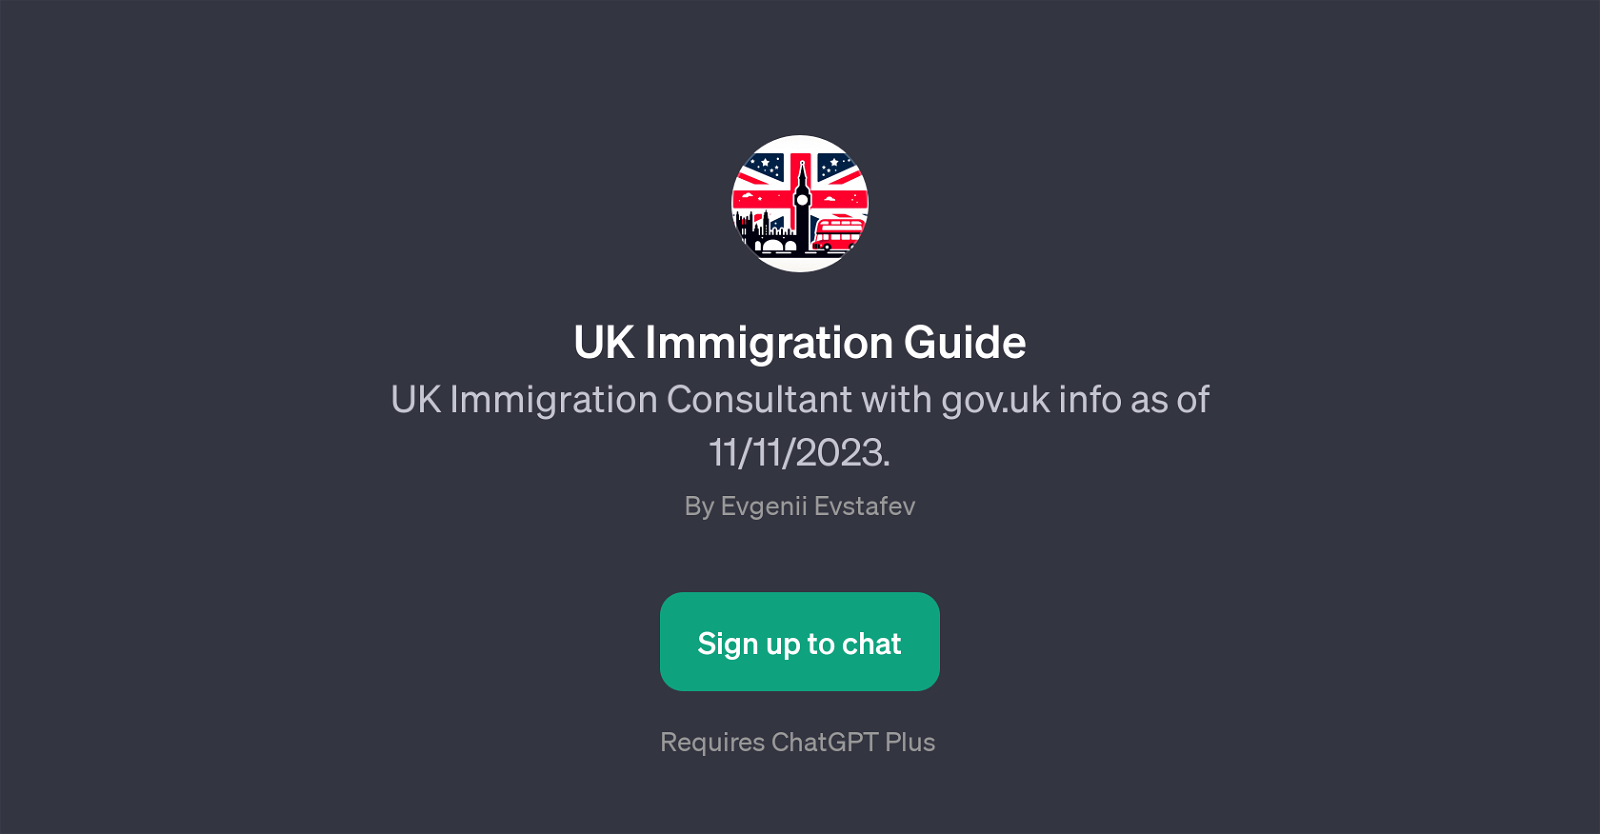 UK Immigration Guide website